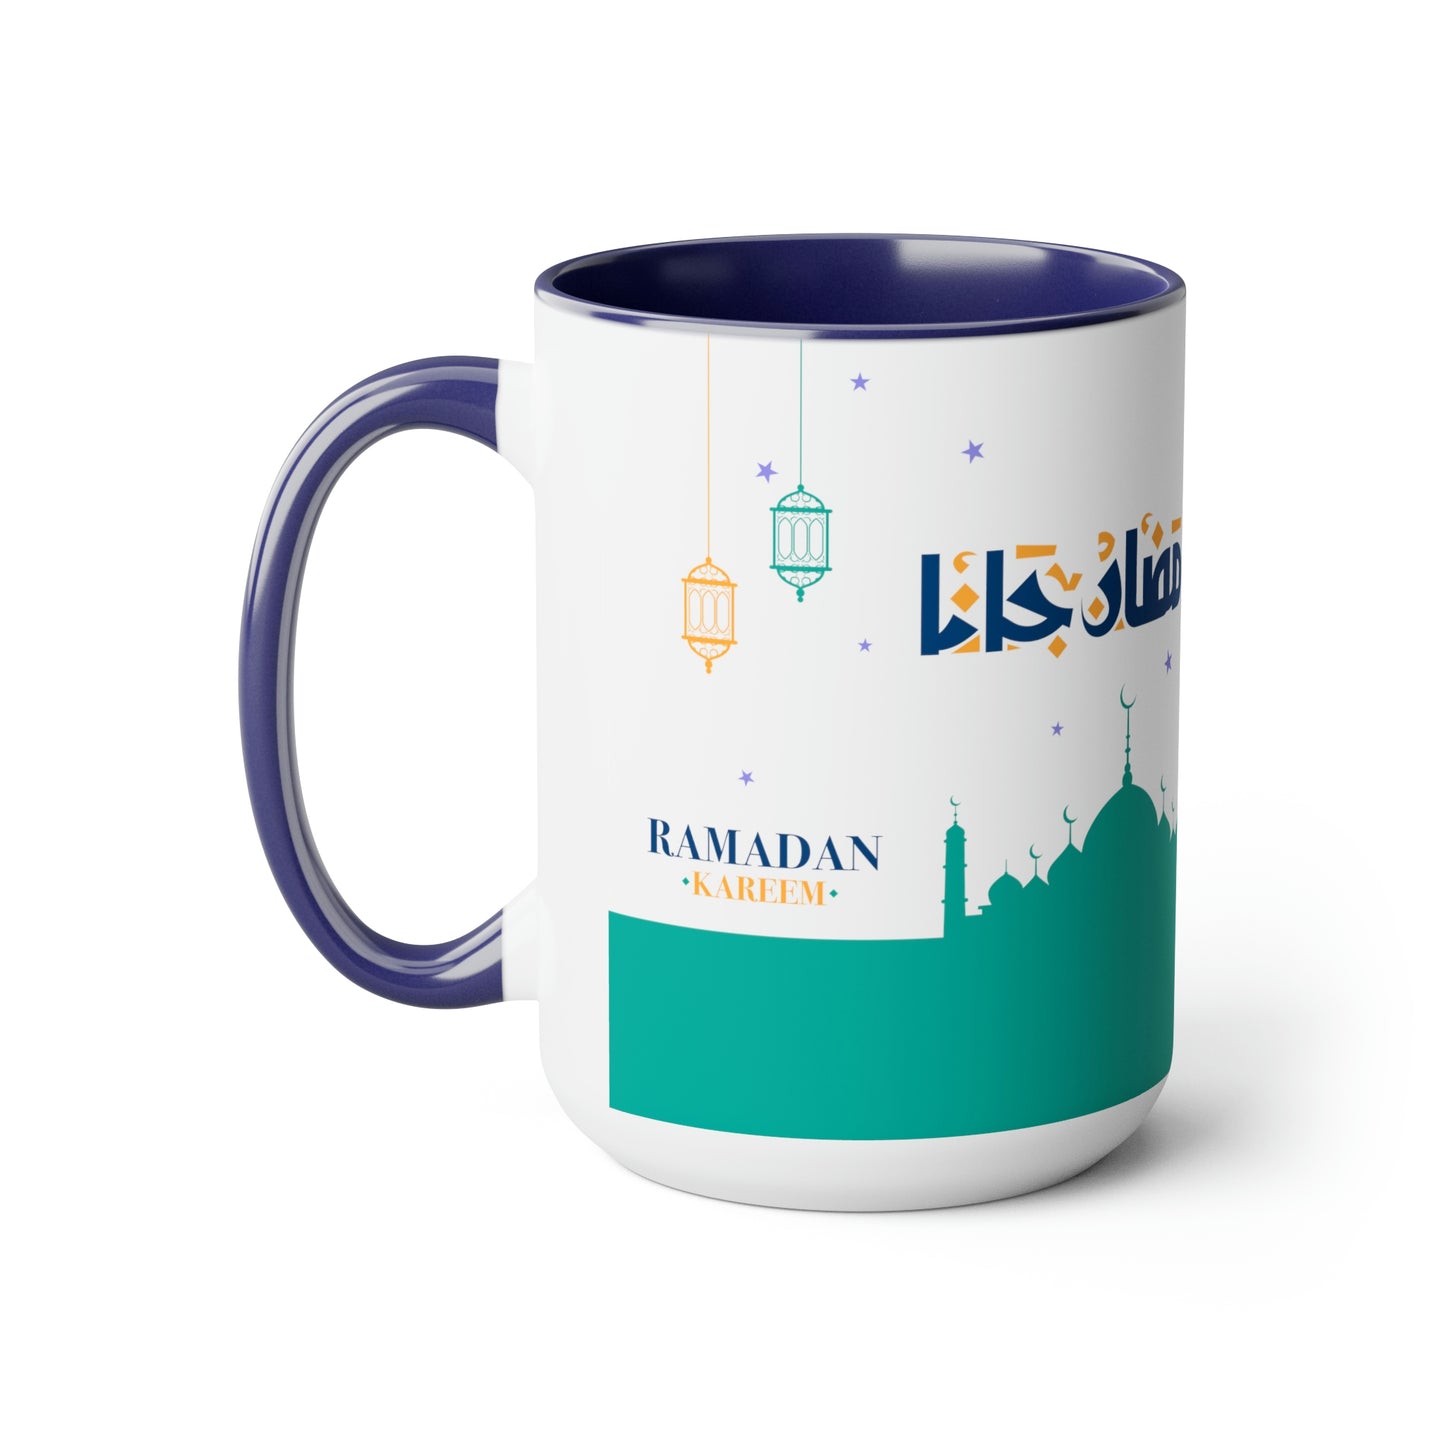 Ramadan Kareem - Two-Tone Coffee Mugs, 15oz